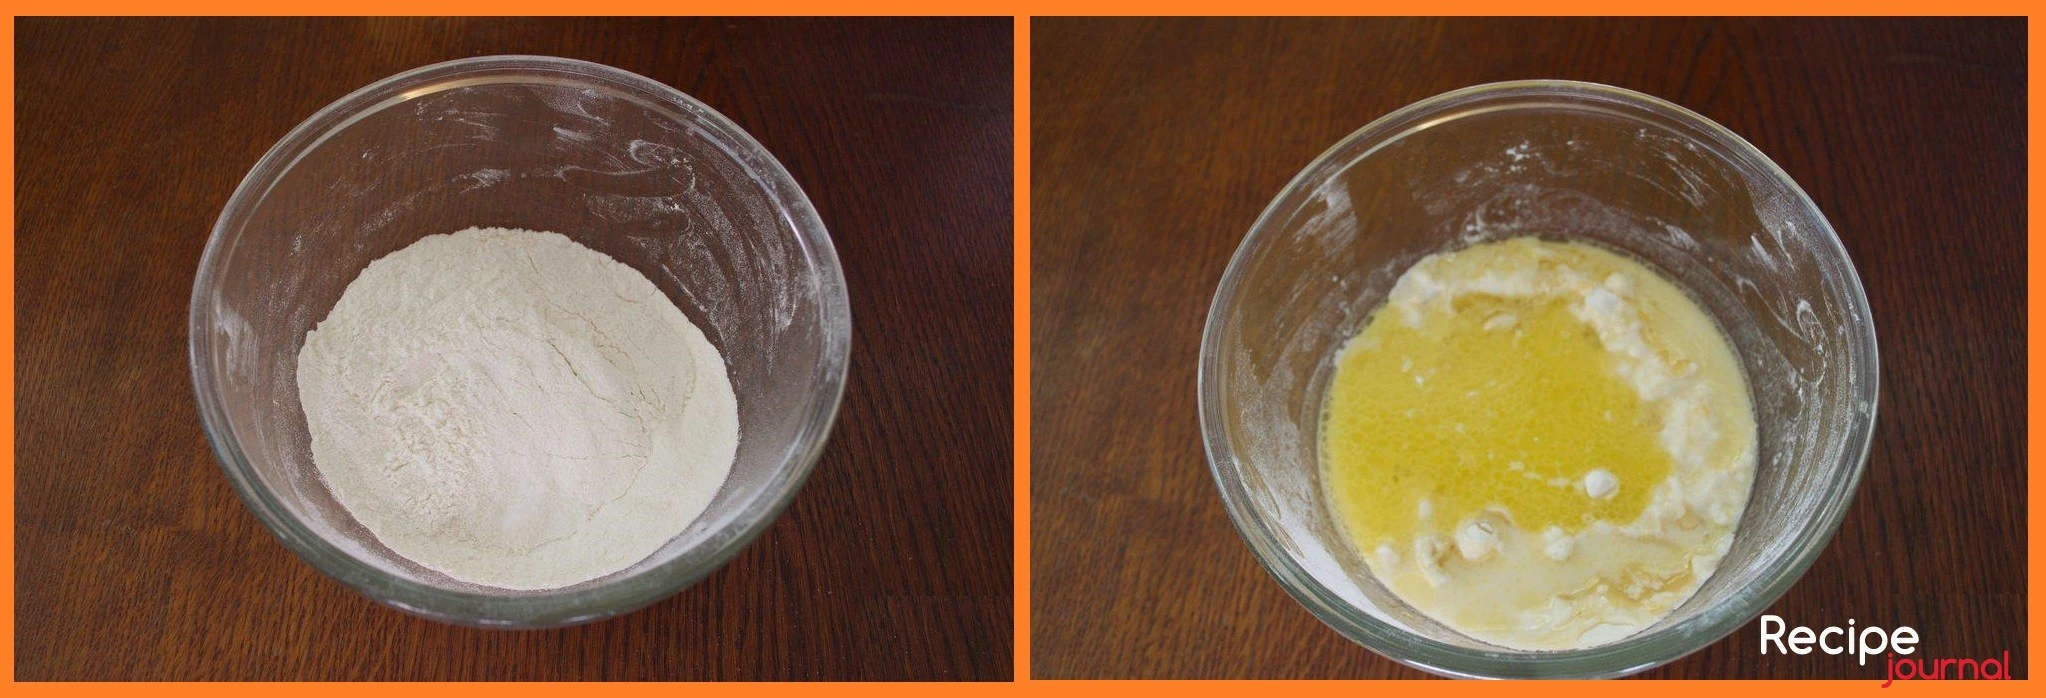 Муку просеять, добавить соль, влить воду и растительное масло. Замесить мягкое  и плотное тесто.